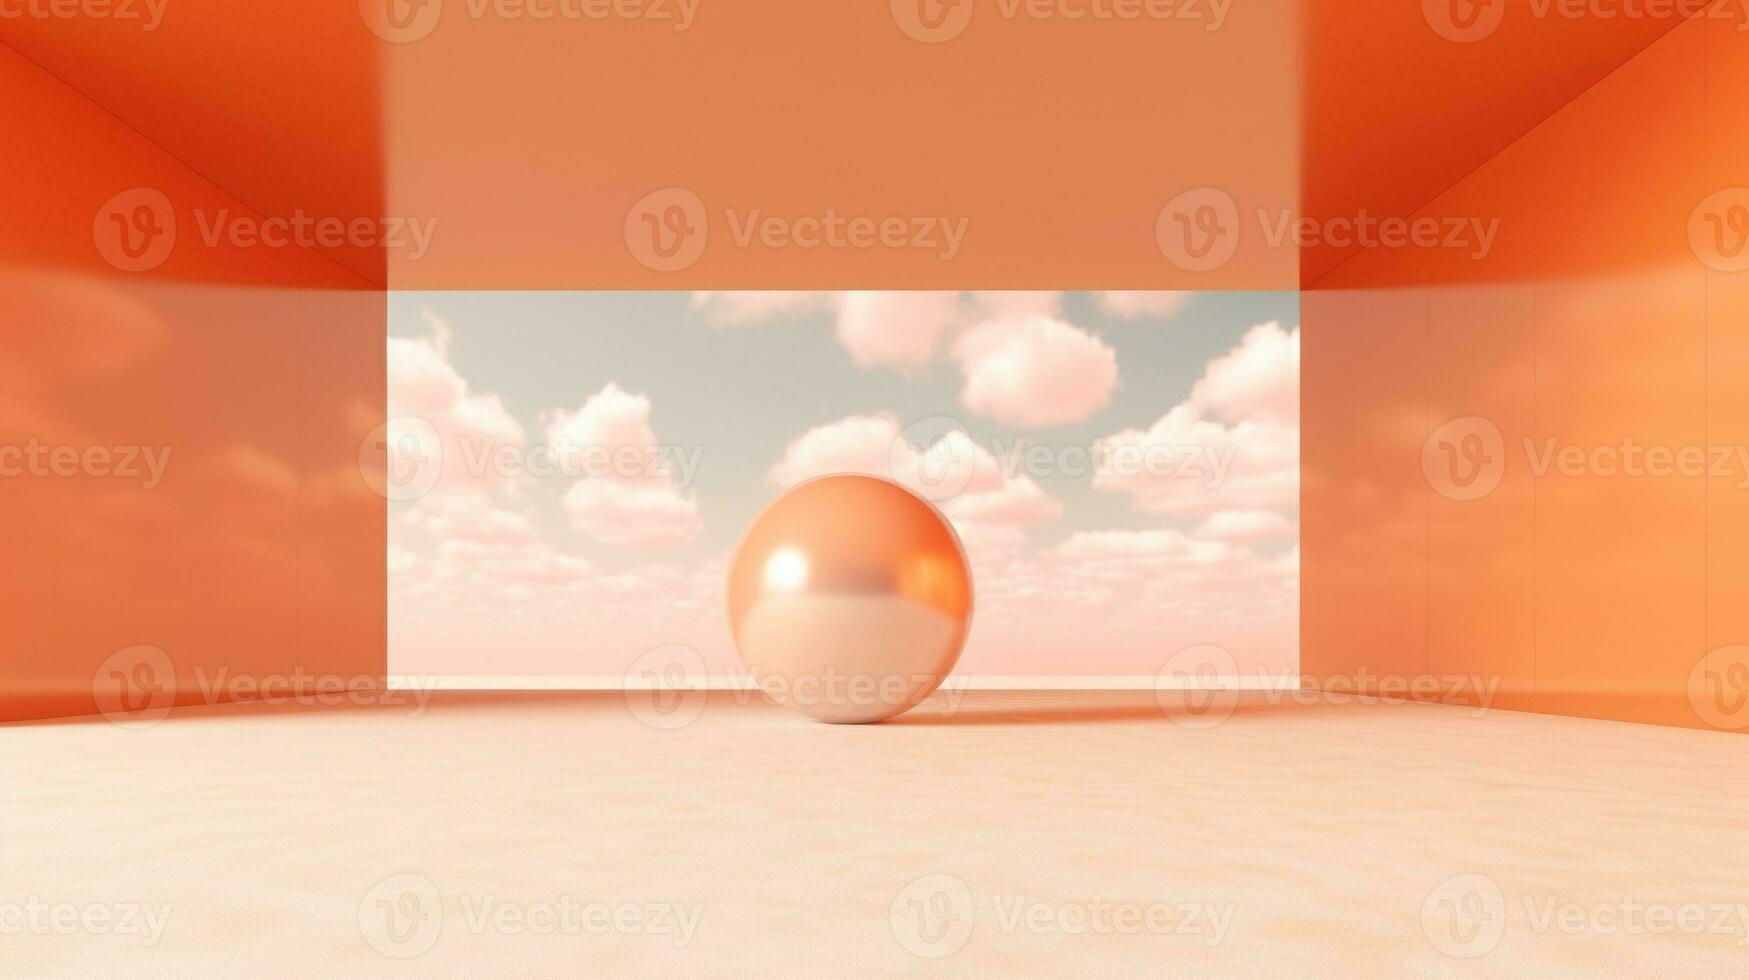 generativo ai, leggero arancia, albicocca colore fantastico 3d nuvole su il pavimento, cielo e paesaggio. dolce colori e con luminosa luci. foto